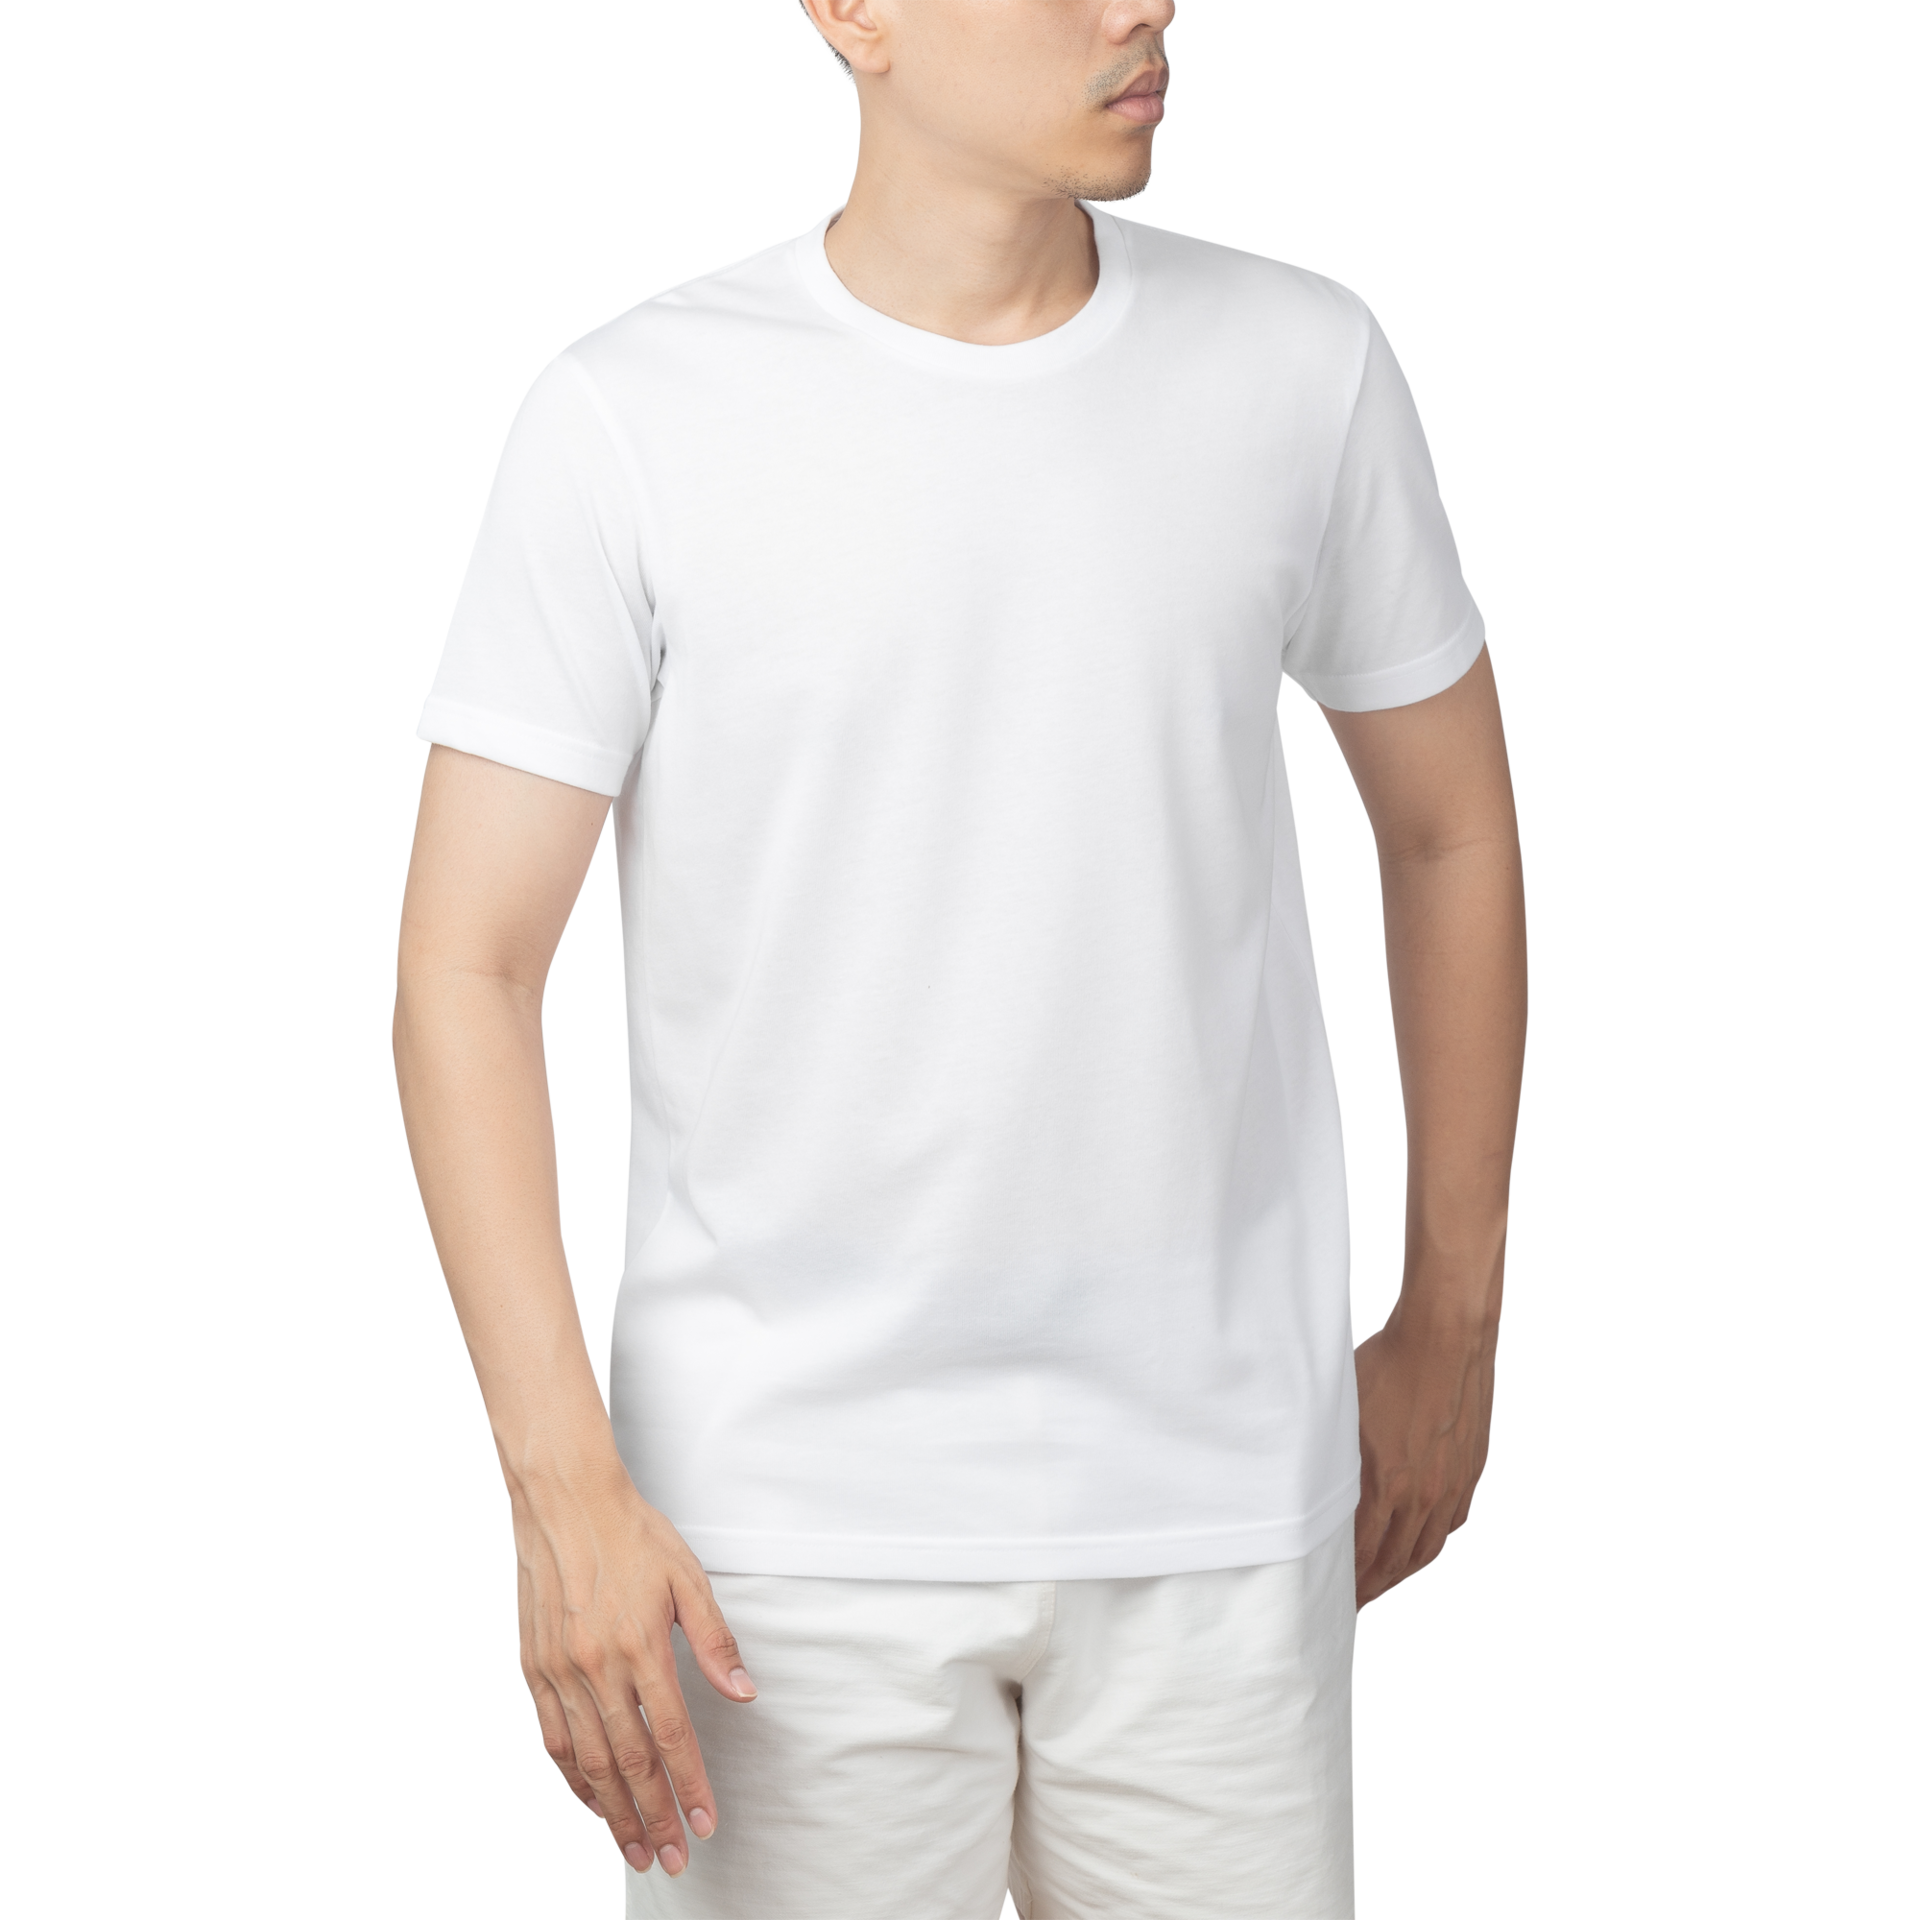 Fotos de Mockup Camiseta Blanca Hombre, +74.000 Fotos de stock gratuitas de  gran calidad